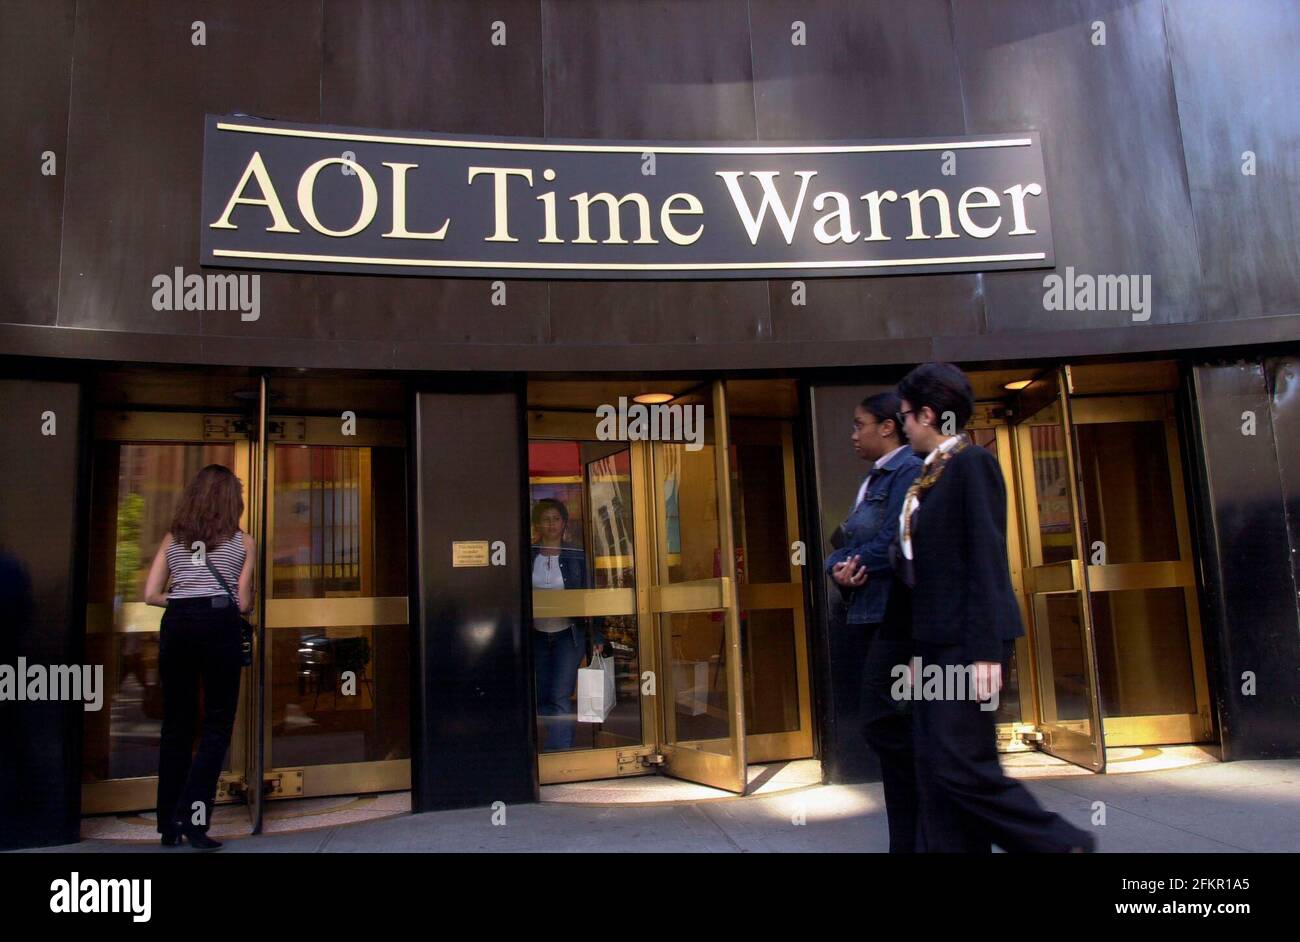 New York City, USA. Oktober 2003. Das Hauptquartier von AOL Time Warner im Rockefeller Center wird am 13. Oktober 2003 gesehen. Das Medienkonglomerat kündigte an, dass es das belagerte AOL von seinem Namen fallen lassen werde, um auf Just Time Warner zurückzugehen. (Foto von Richard B. Levine) Quelle: SIPA USA/Alamy Live News Stockfoto